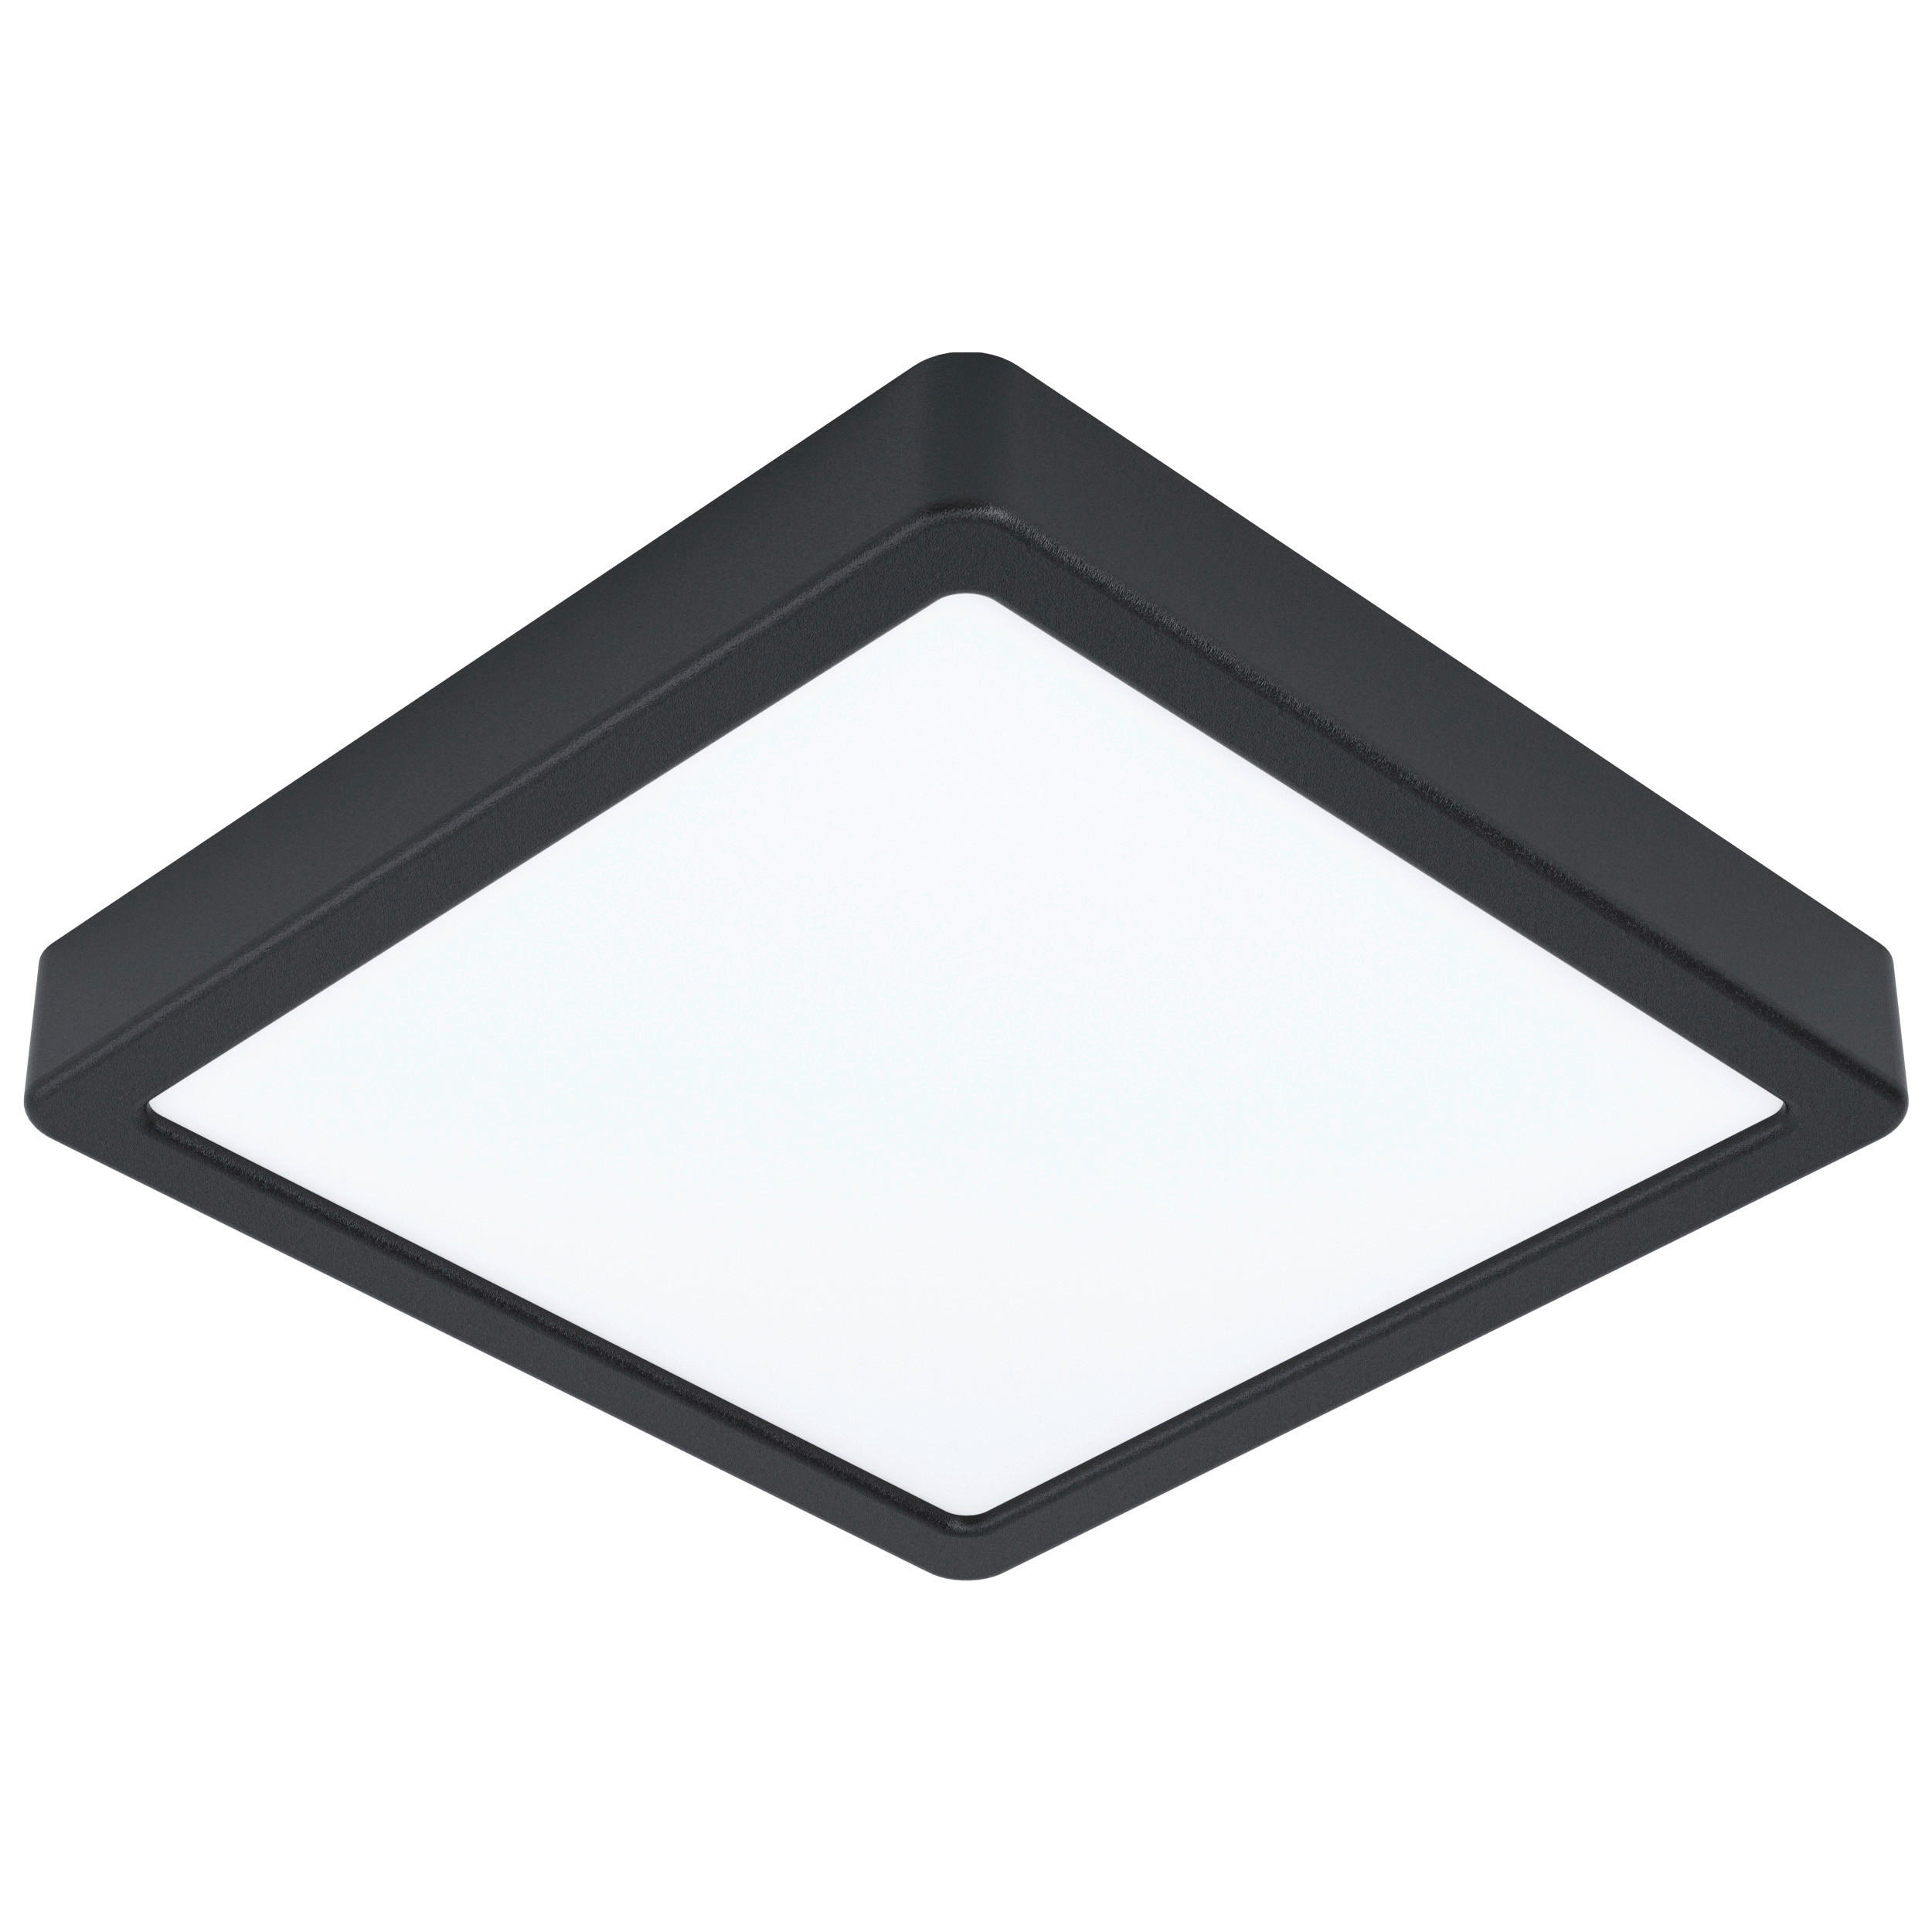 LED-DECKENLEUCHTE 16,5 W    21/21/2,8 cm  - Schwarz/Weiß, Basics, Kunststoff/Metall (21/21/2,8cm) - Novel